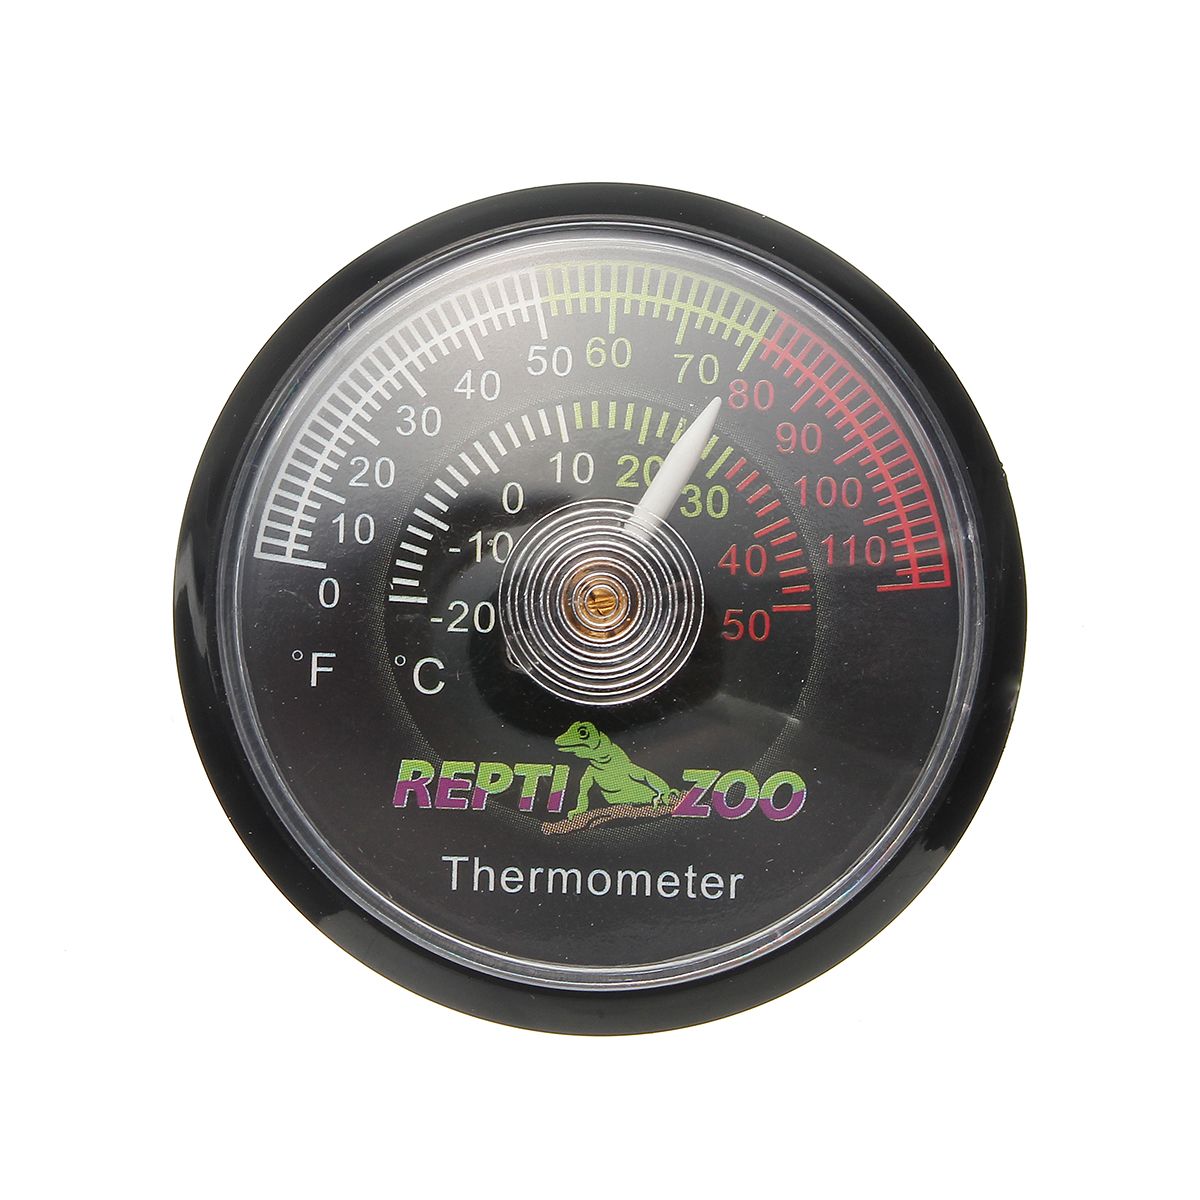 Reptile-Tortoise-Vivarium-Terrarium-Temperature-Meter-Thermometer-with-Colour-Codes-1263986